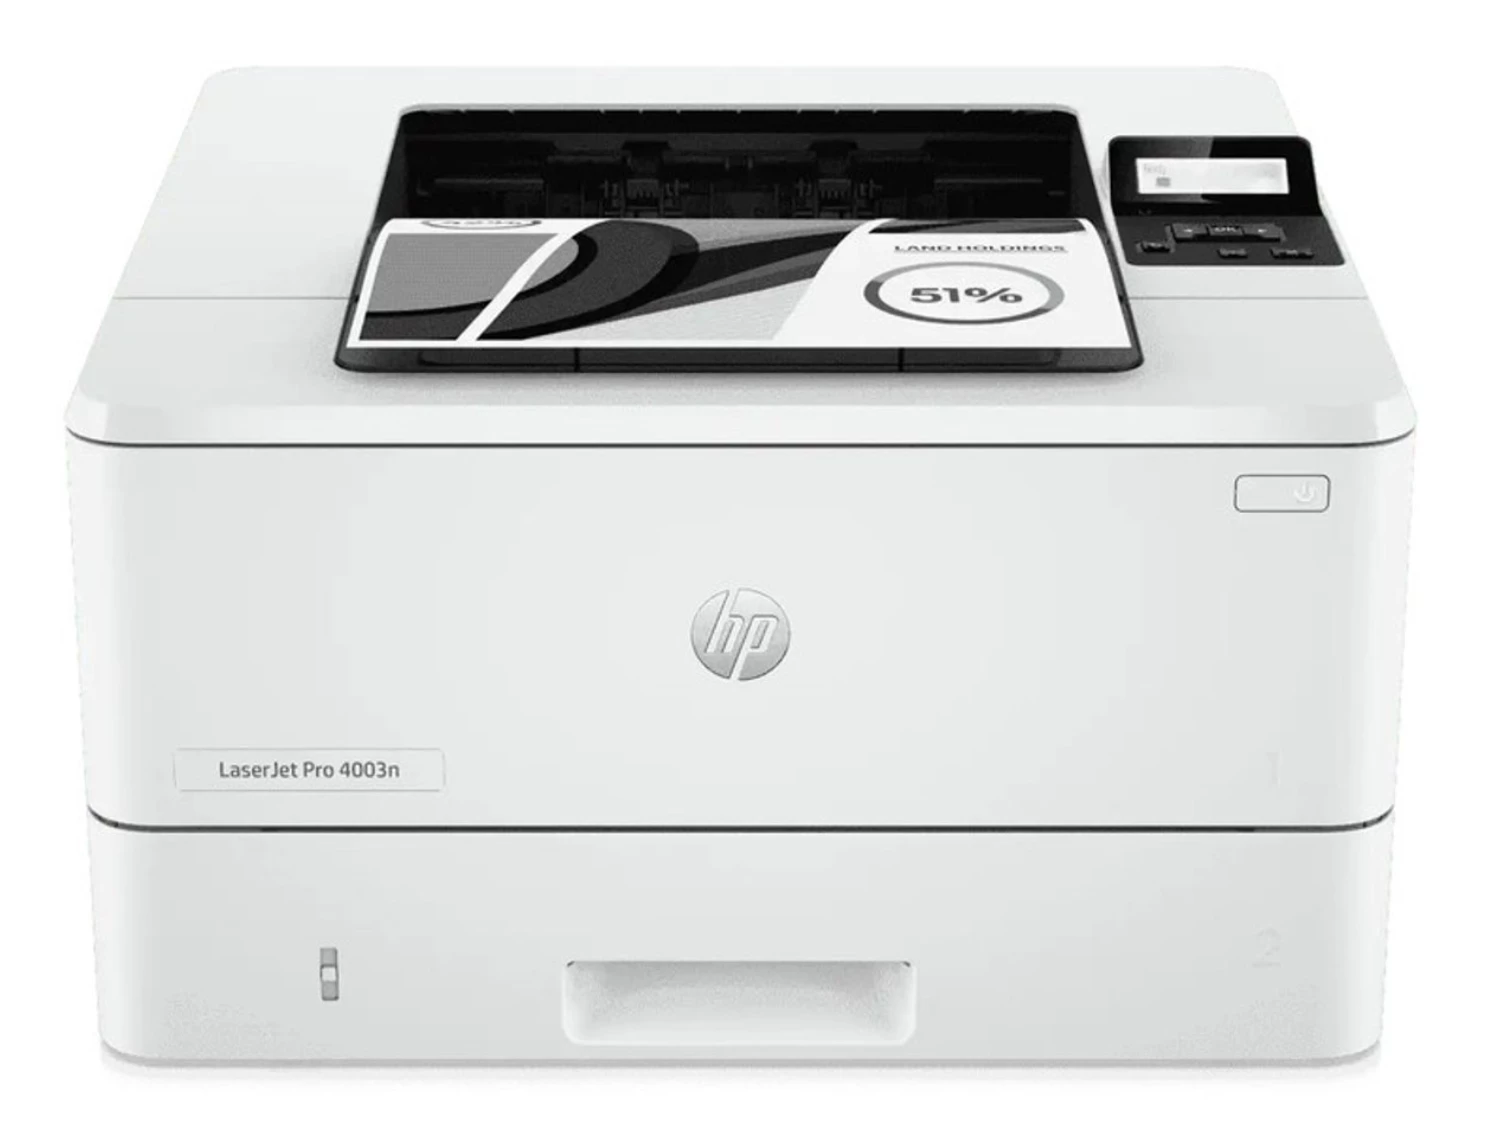 HP LaserJet Pro 4003n 鐳射打印機 #2Z611A